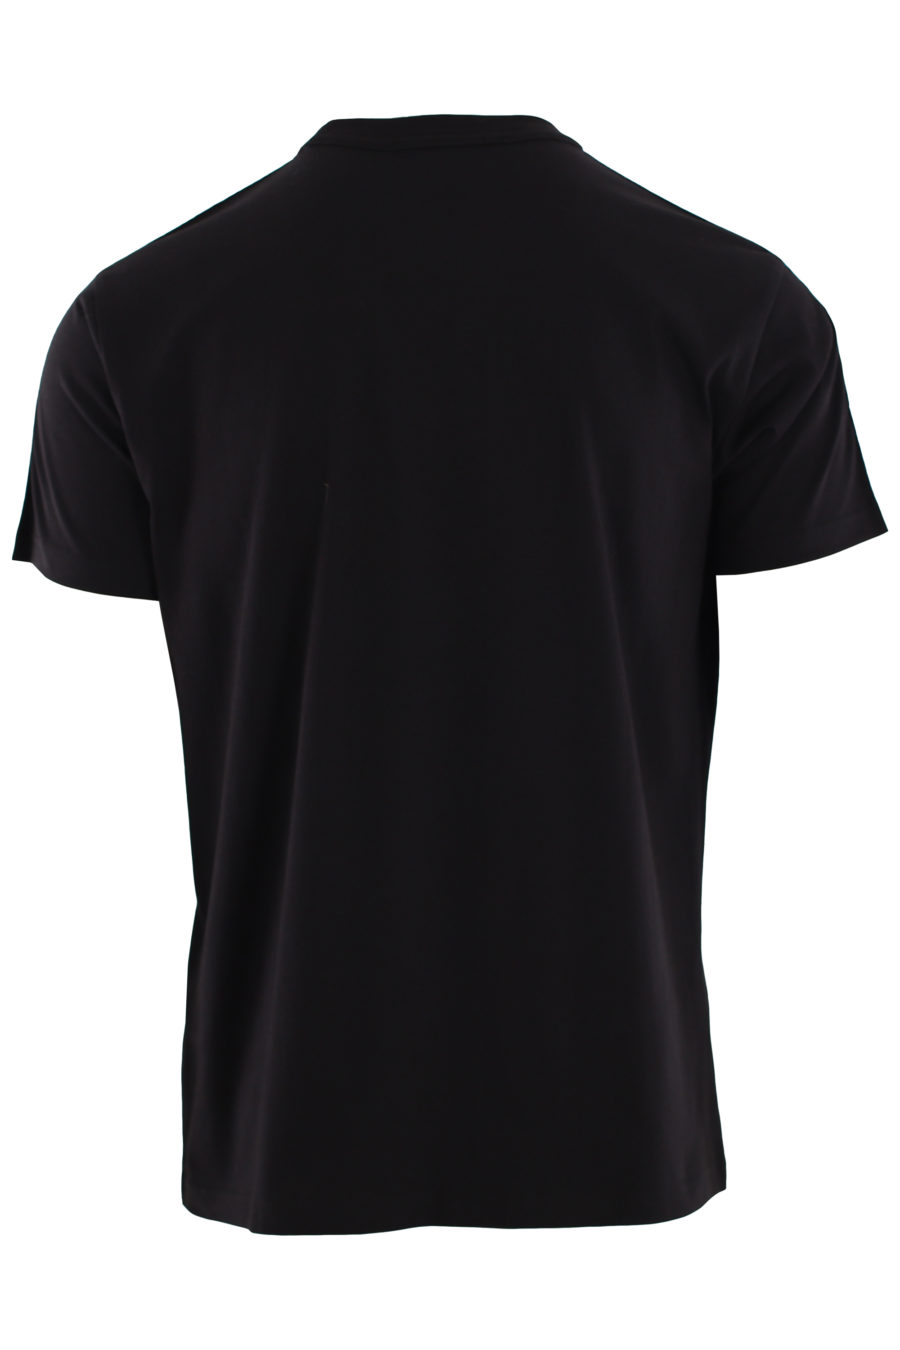 Camiseta negra con cinta azul con logotipo - IMG 0427